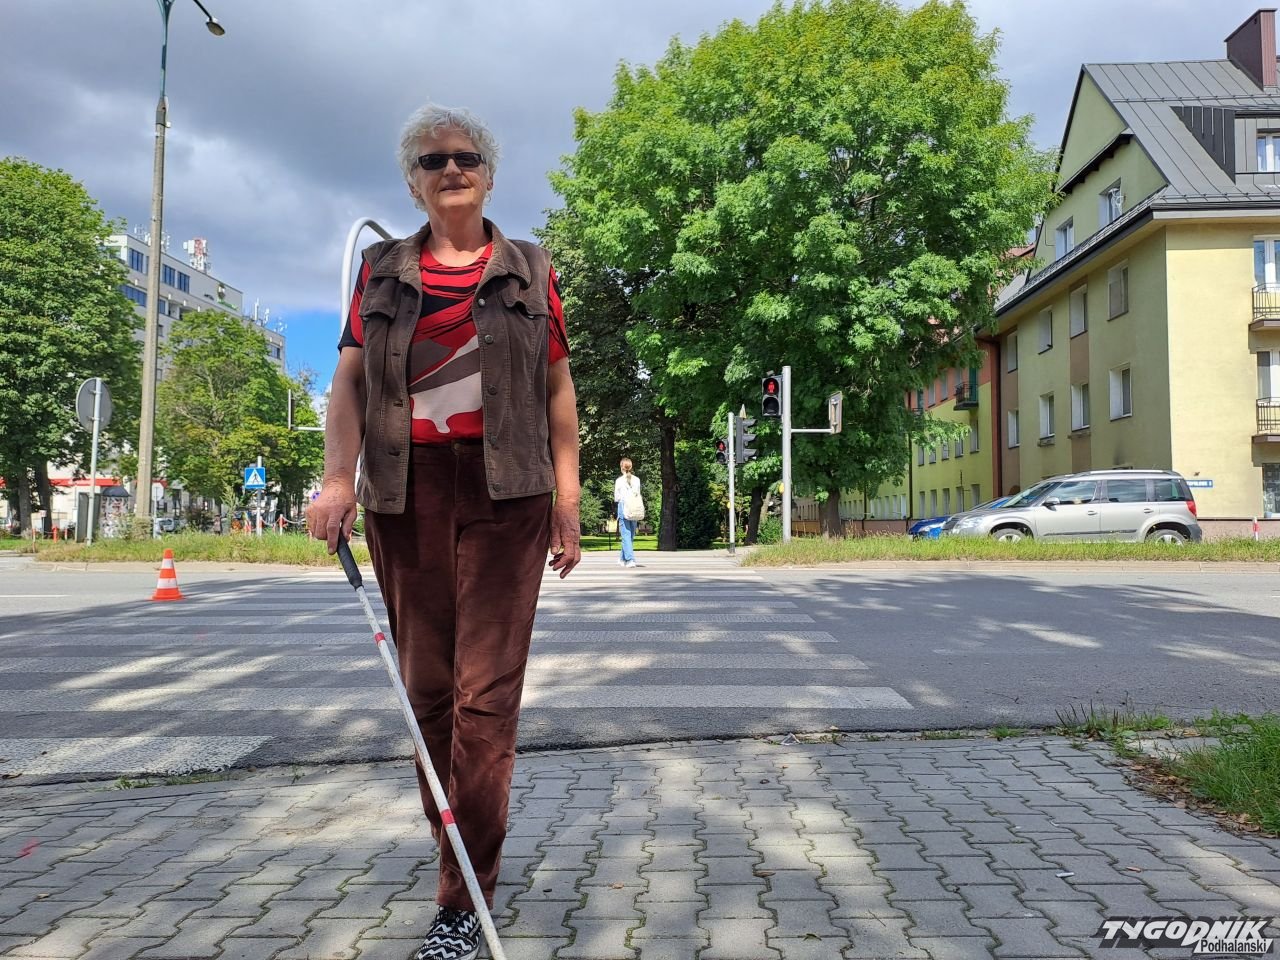 24tp.pl – Piąte koło u wózka czyli wyborcze marzenia osób z niepełnosprawnościami